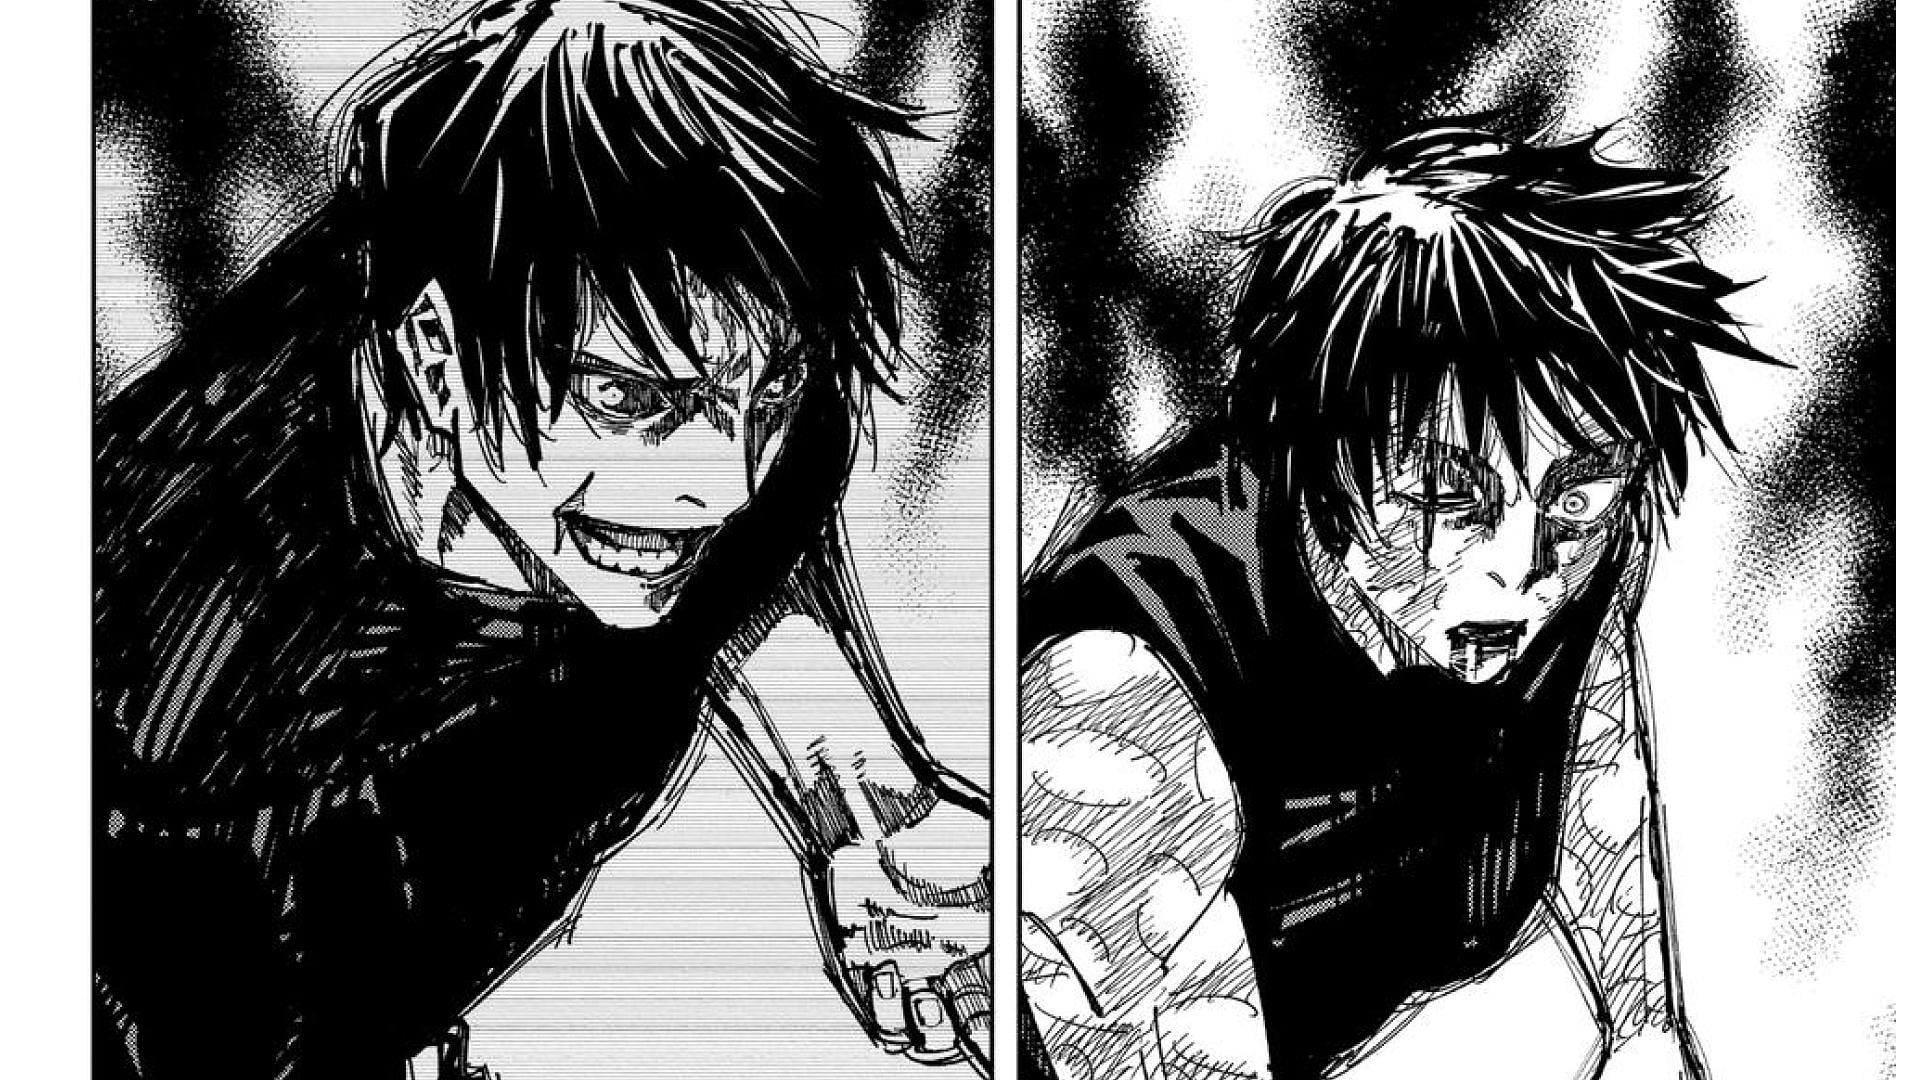 Maki being compared to Toji in Jujutsu Kaisen Manga (Image via Akutami Gege/Shueisha)